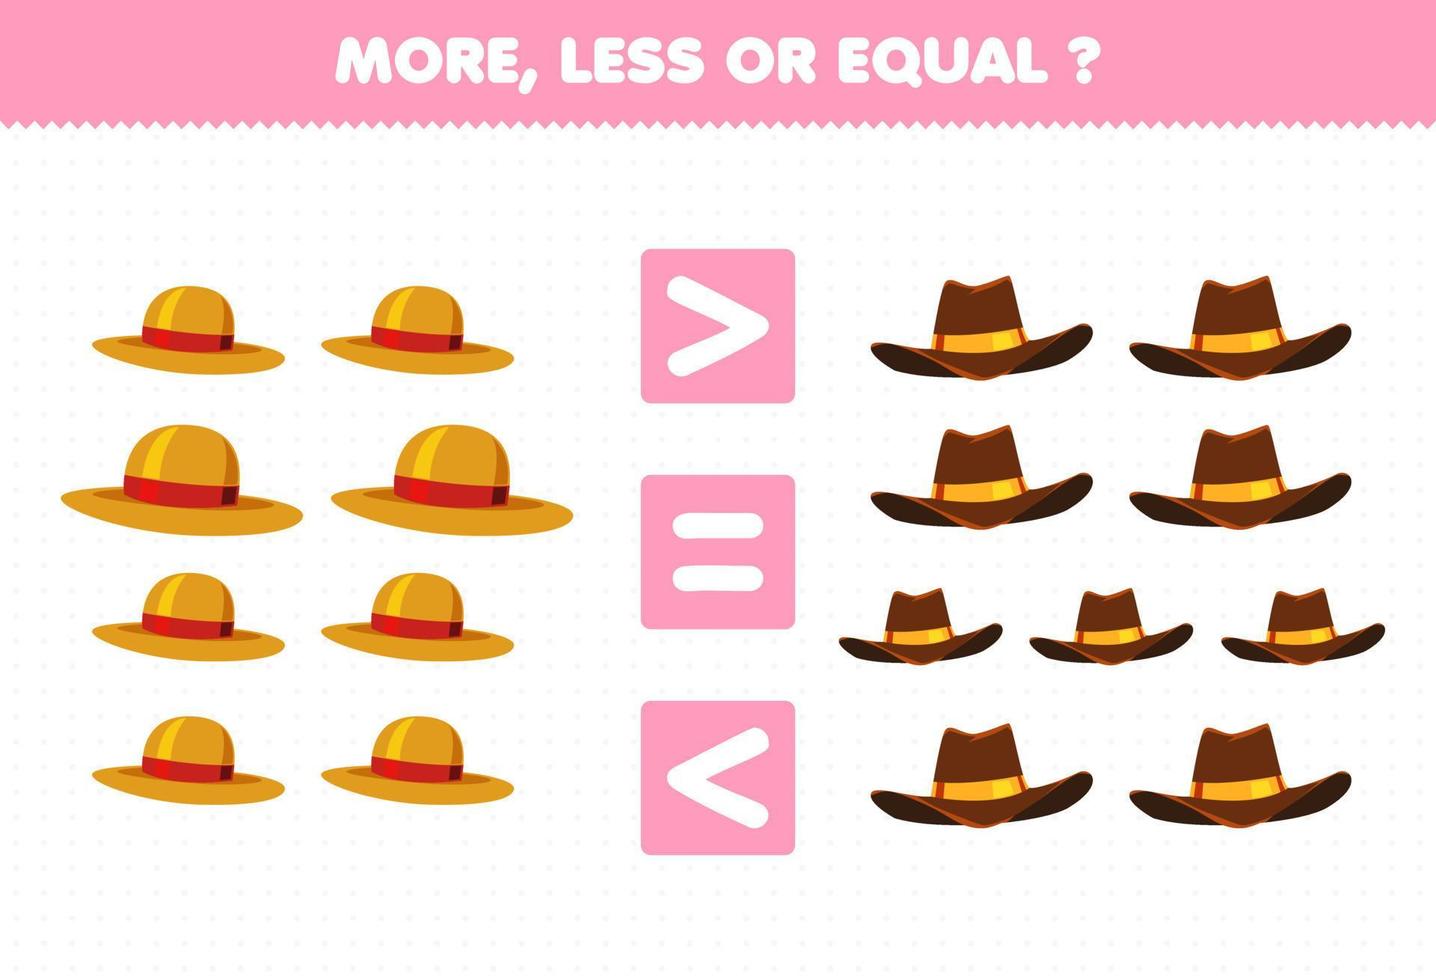 jogo de educação para crianças mais menos ou igual conte a quantidade de chapéu de roupas vestíveis de desenho animado vetor